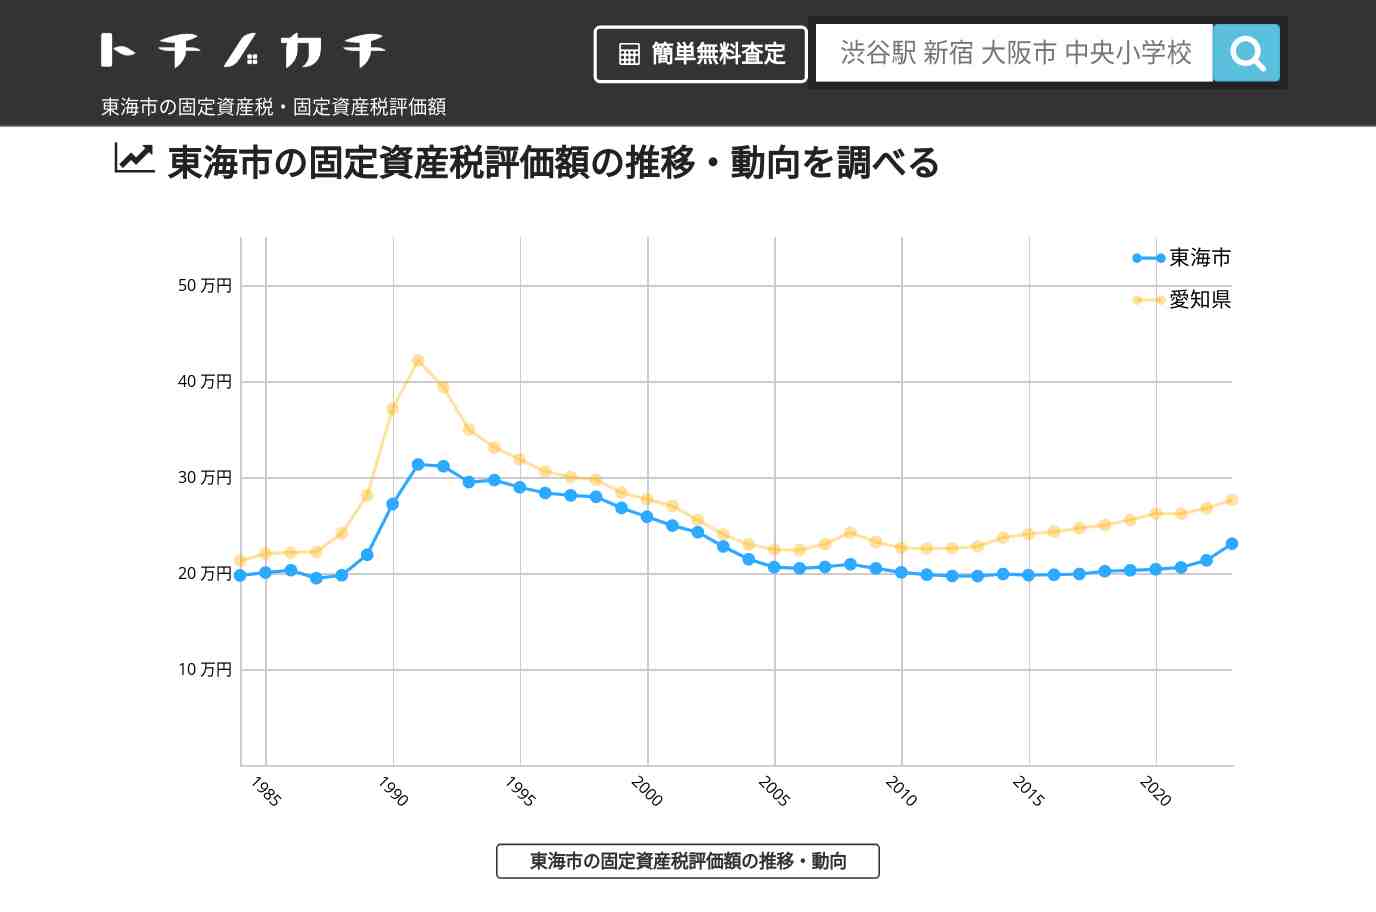 船島小学校(愛知県 東海市)周辺の固定資産税・固定資産税評価額 | トチノカチ